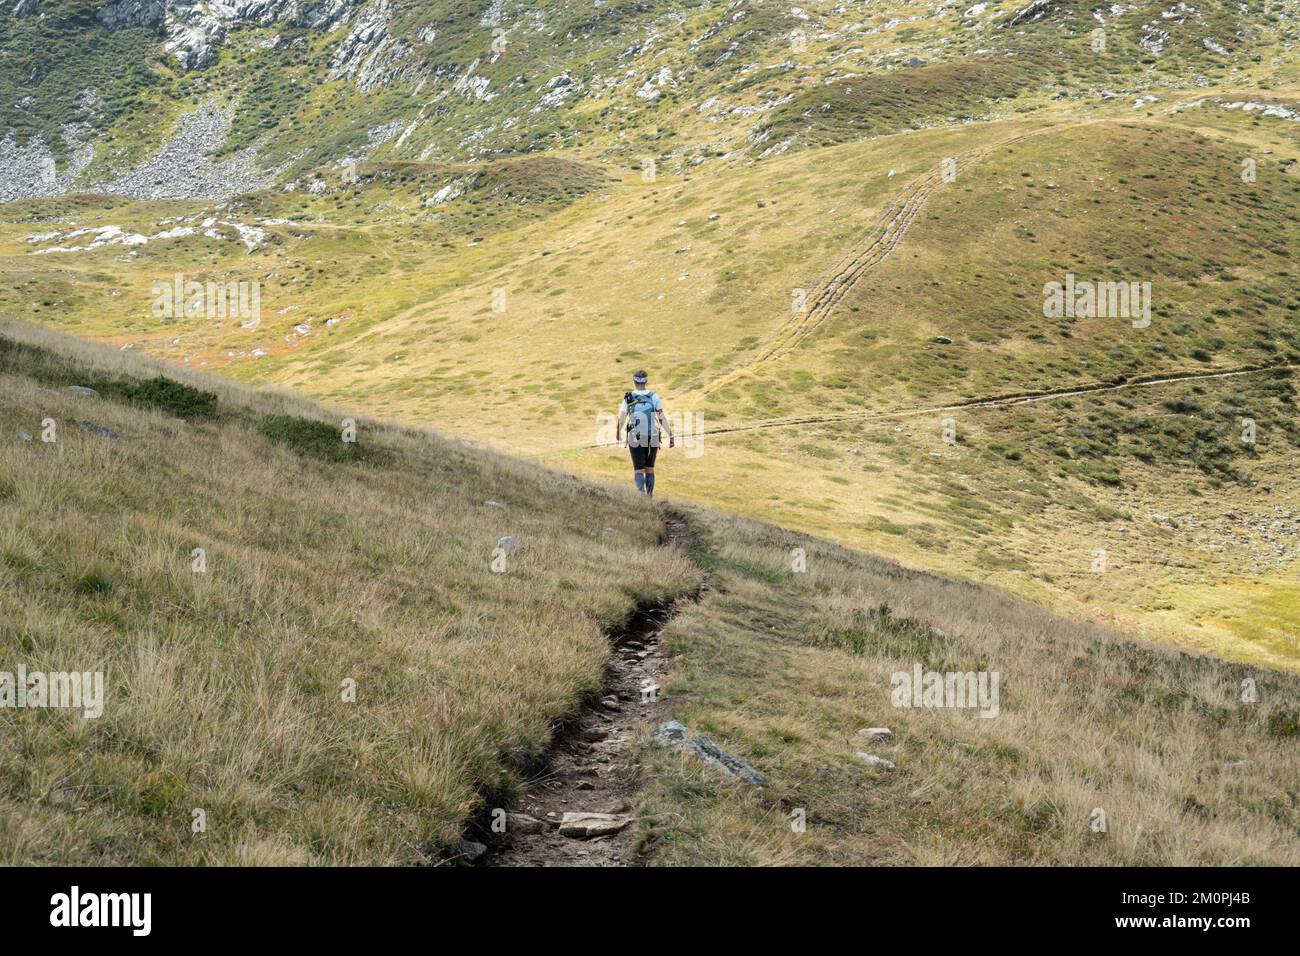 Une seule marchette se déplaçant le long d'un sentier de montagne alpin en été dans la vallée de Chamonix en France Banque D'Images